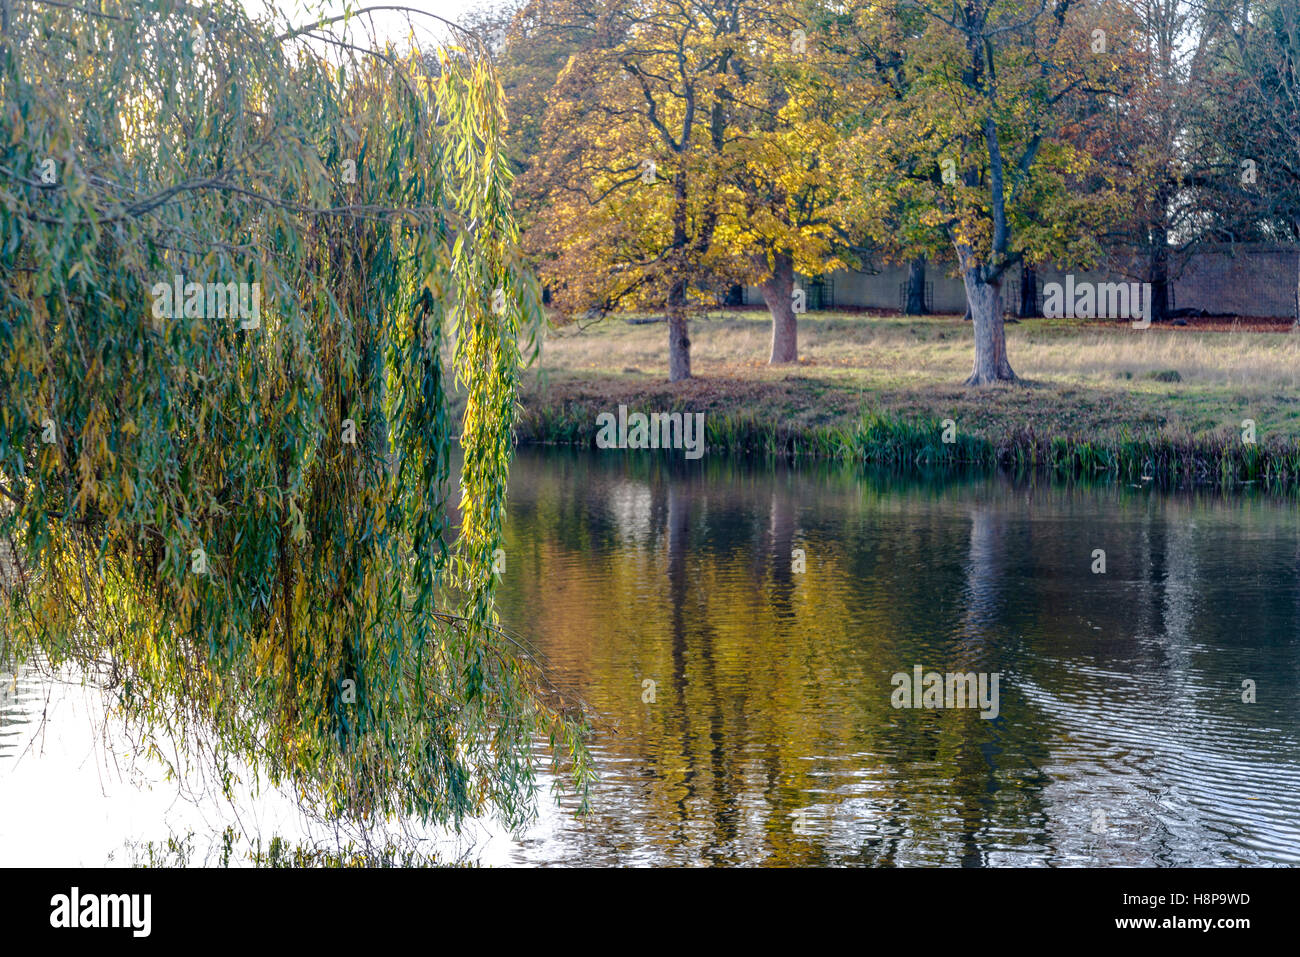 Saule pleureur en automne à Hampton Wick étang dans Home Park, Surrey, England, UK Banque D'Images